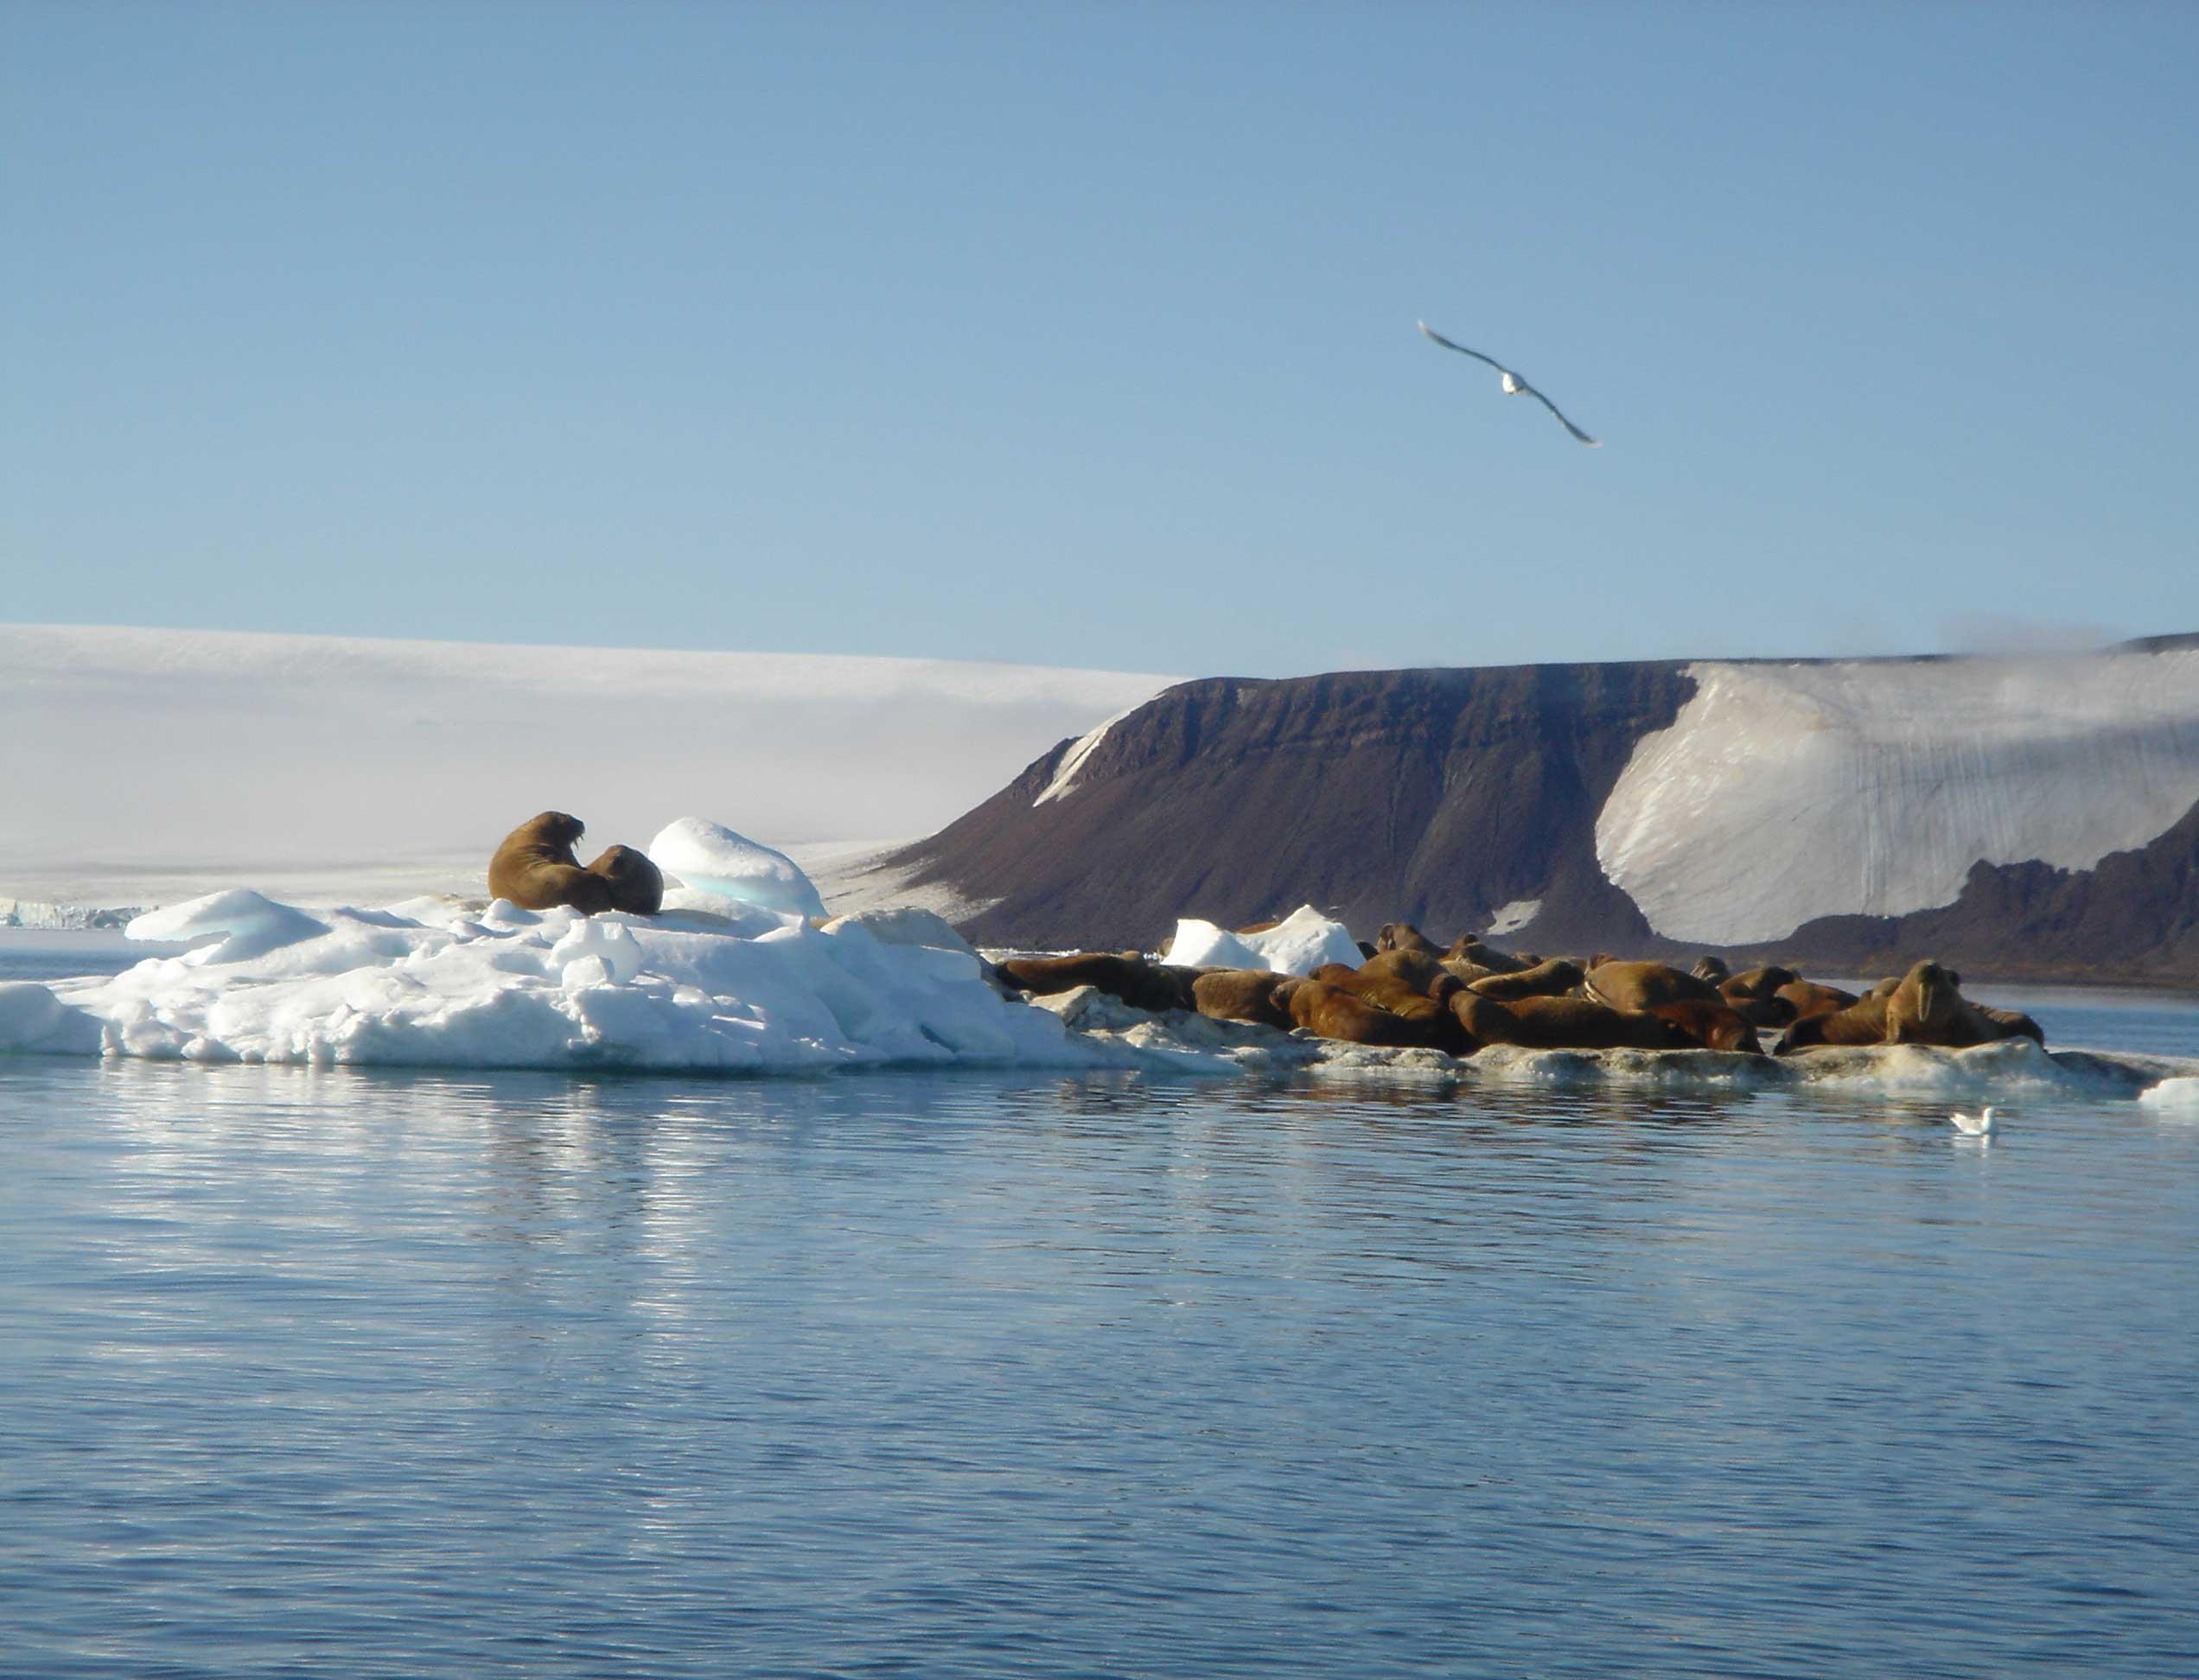 Конкурс: какой должна быть современная площадка для сбора отходов в Арктике?